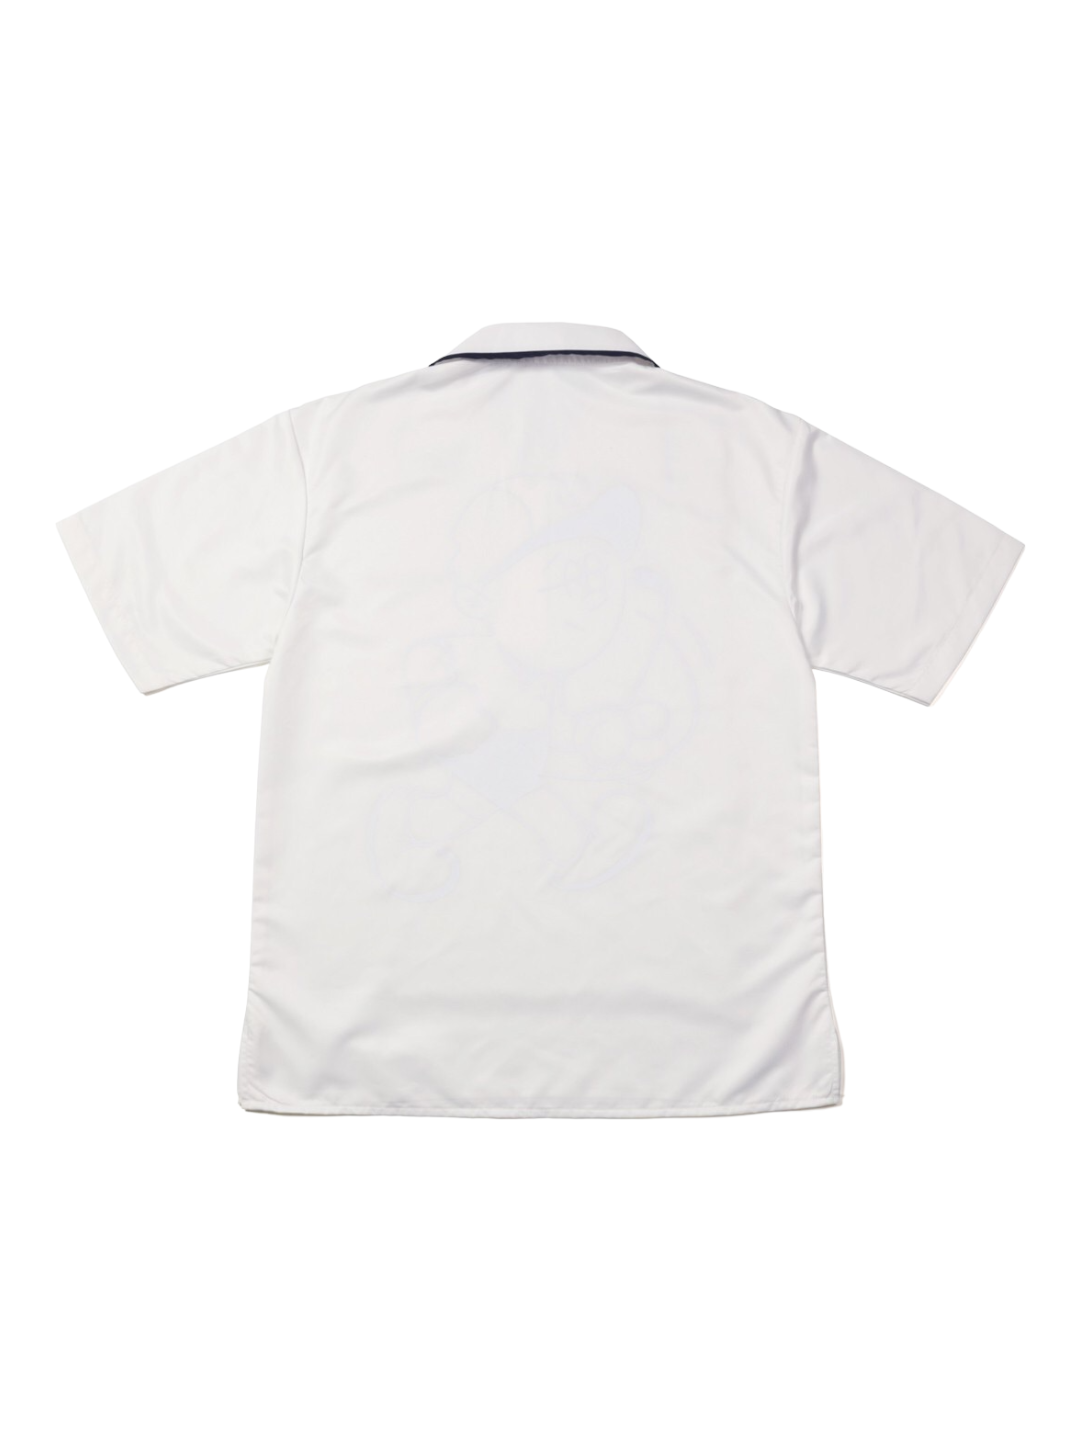 Micro fiber Shirt (White)